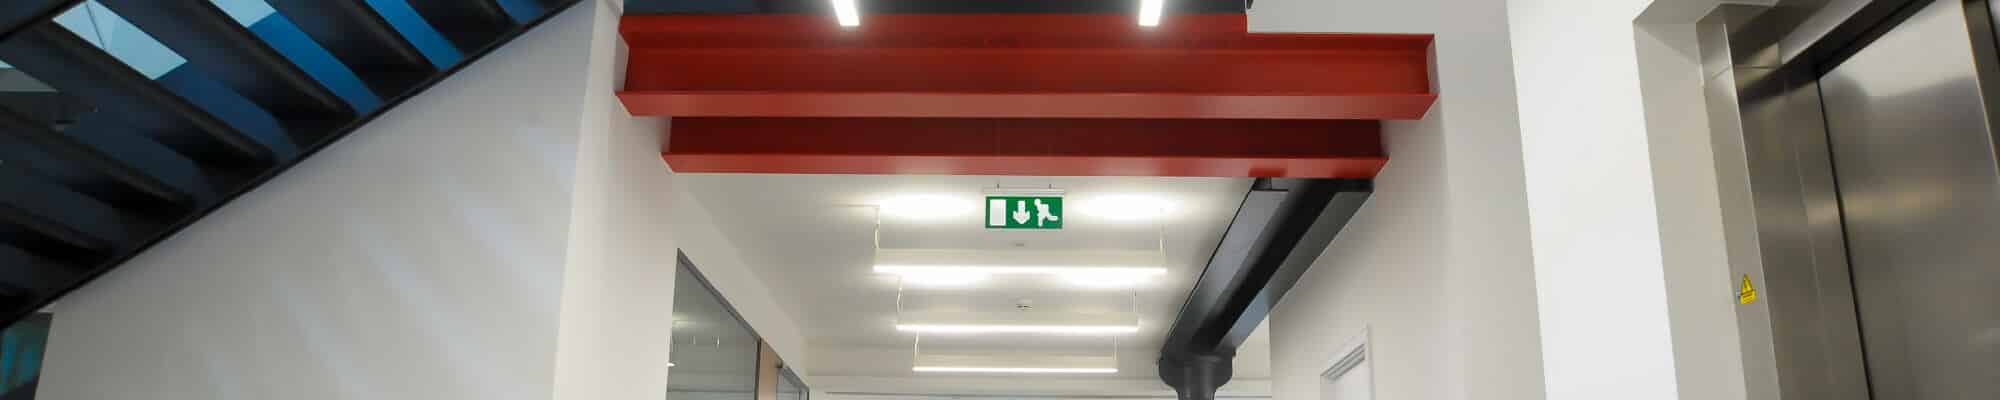 emergency lighting solution walkway